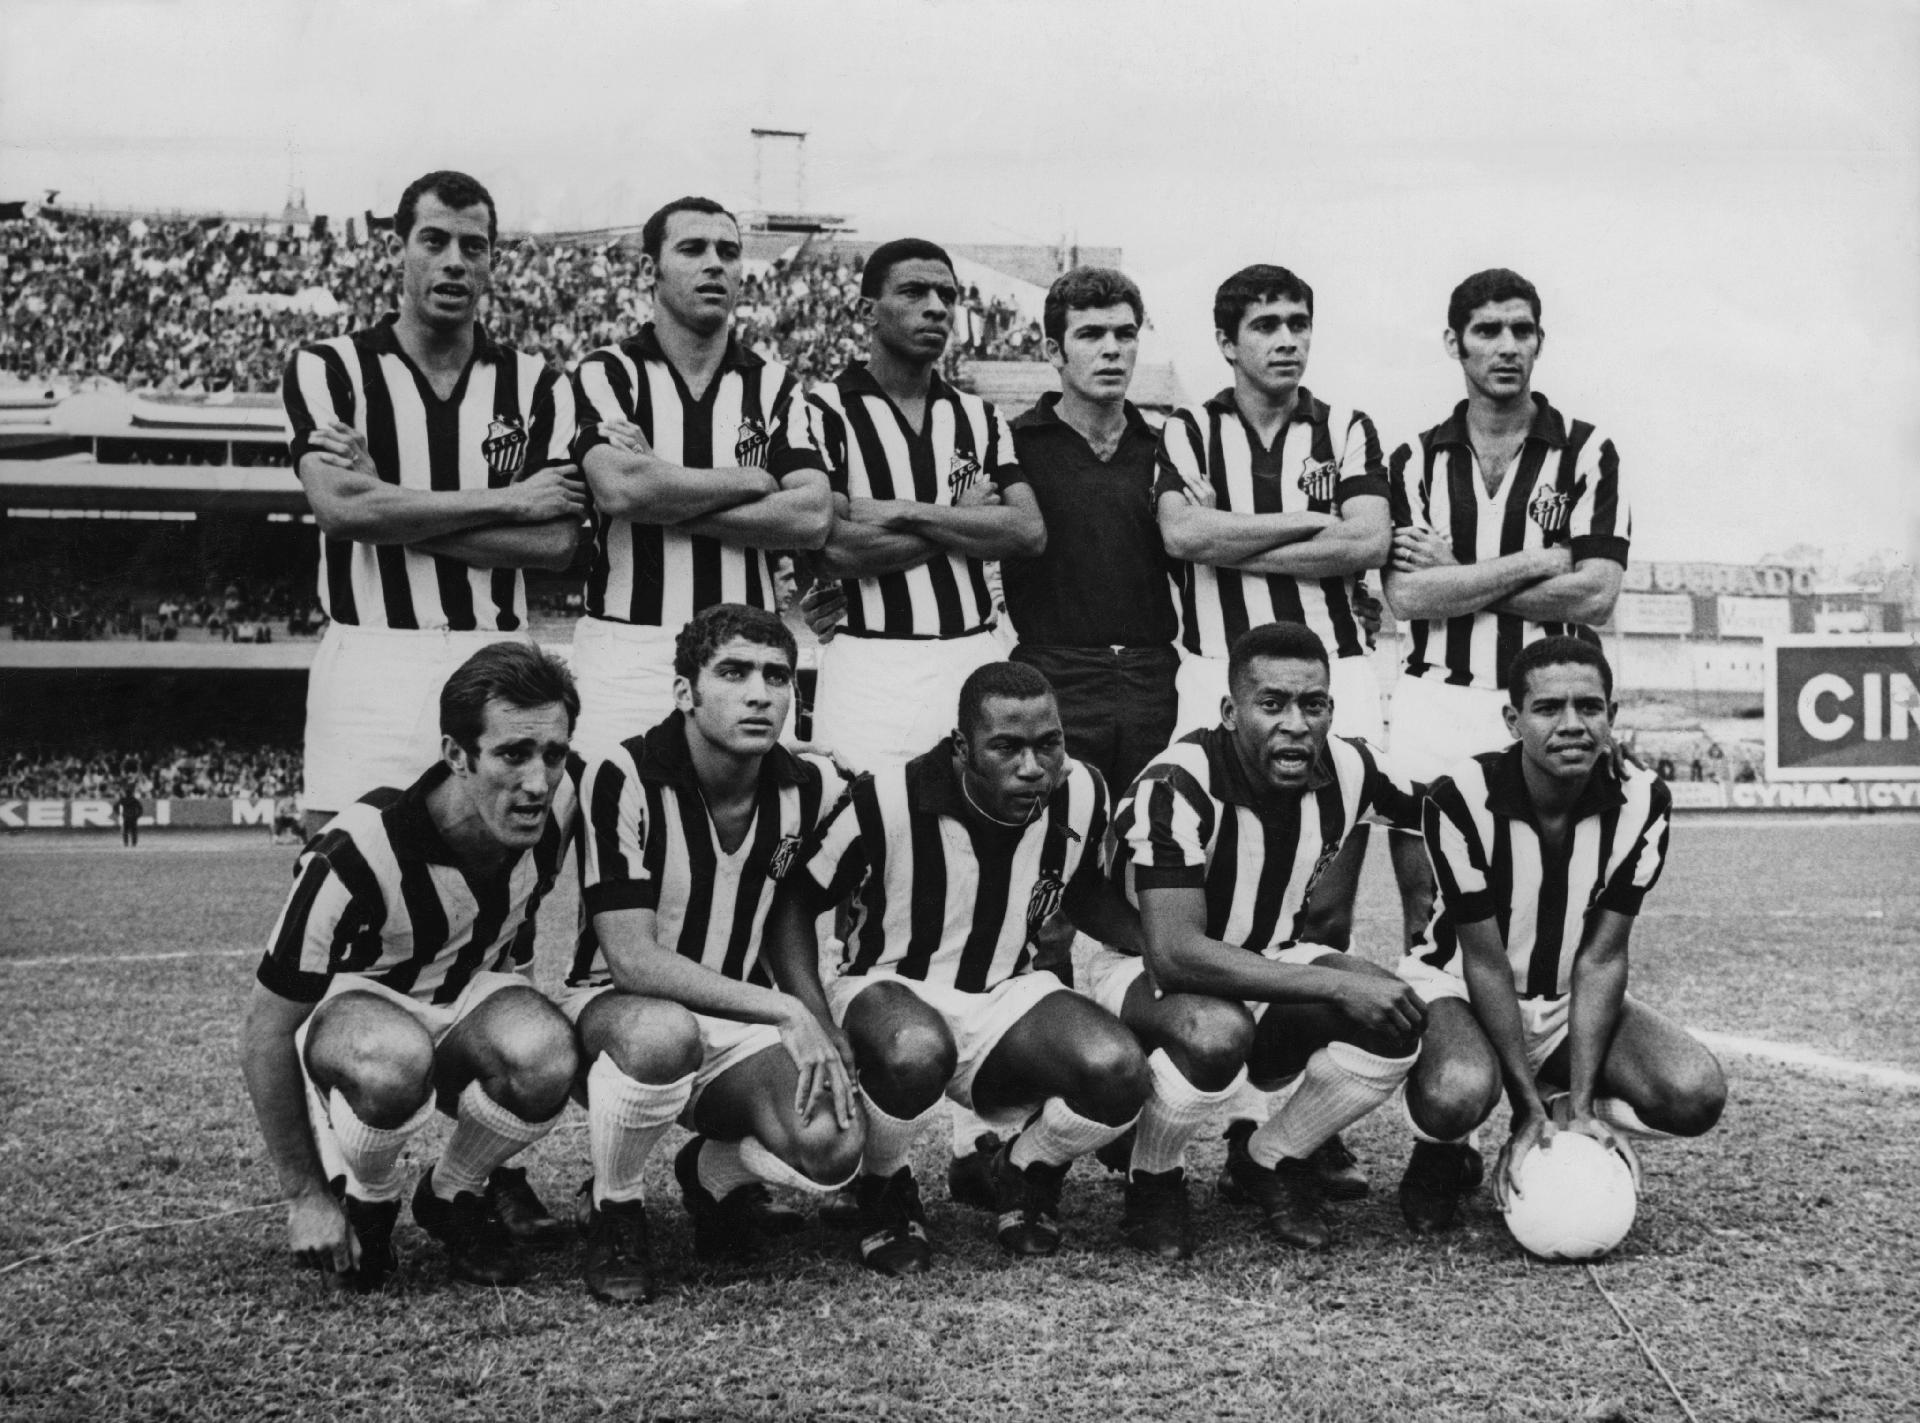 Pele posa para foto junto com seus colegas no Santos FC em 23 de junho de 1969. - Pictorial Parade/Getty Images